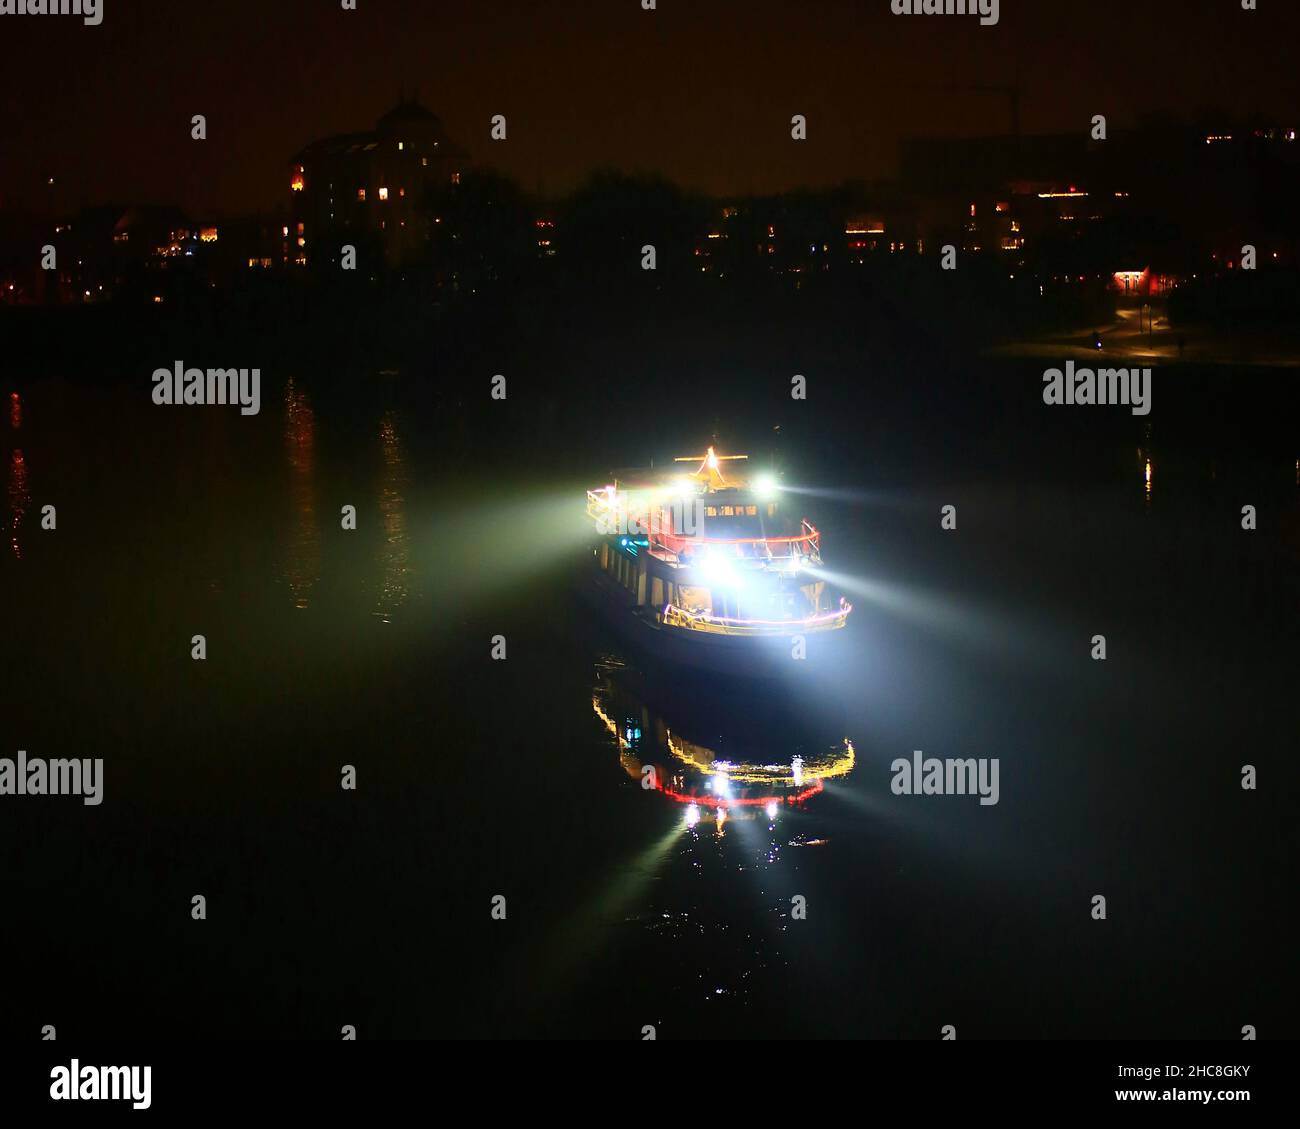 Petit bateau sur une rivière avec des lumières de recherche et d'illumination dans la nuit. Banque D'Images